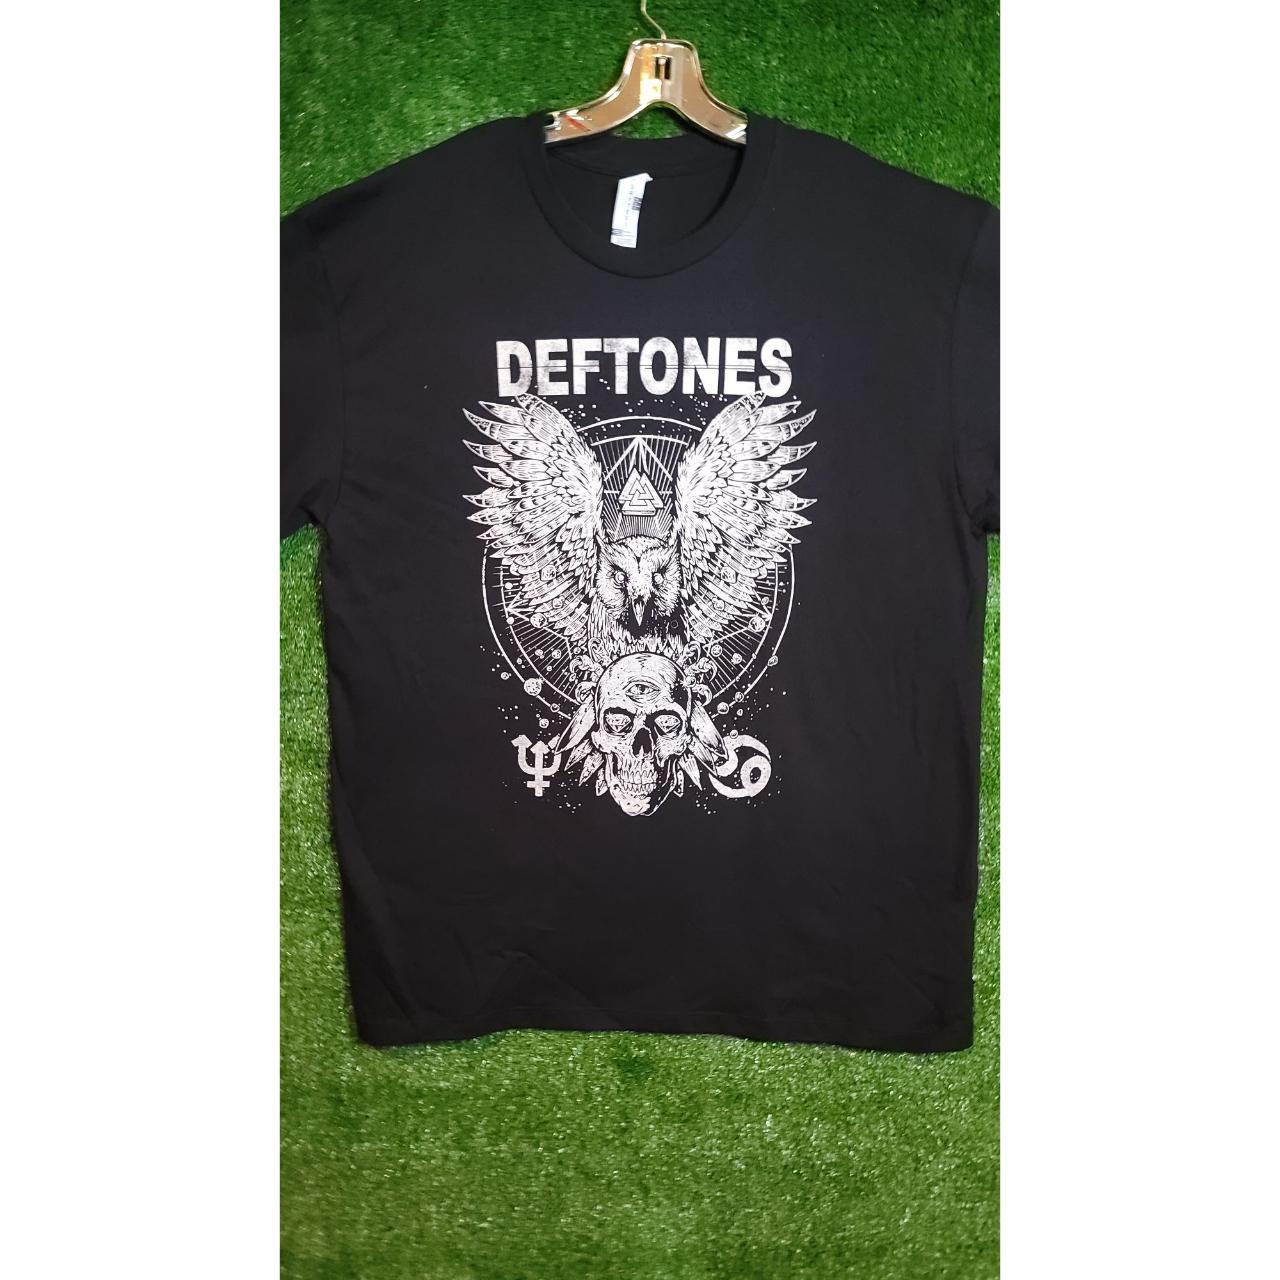 Deftones 'Album Cover' (Black) T-Shirt